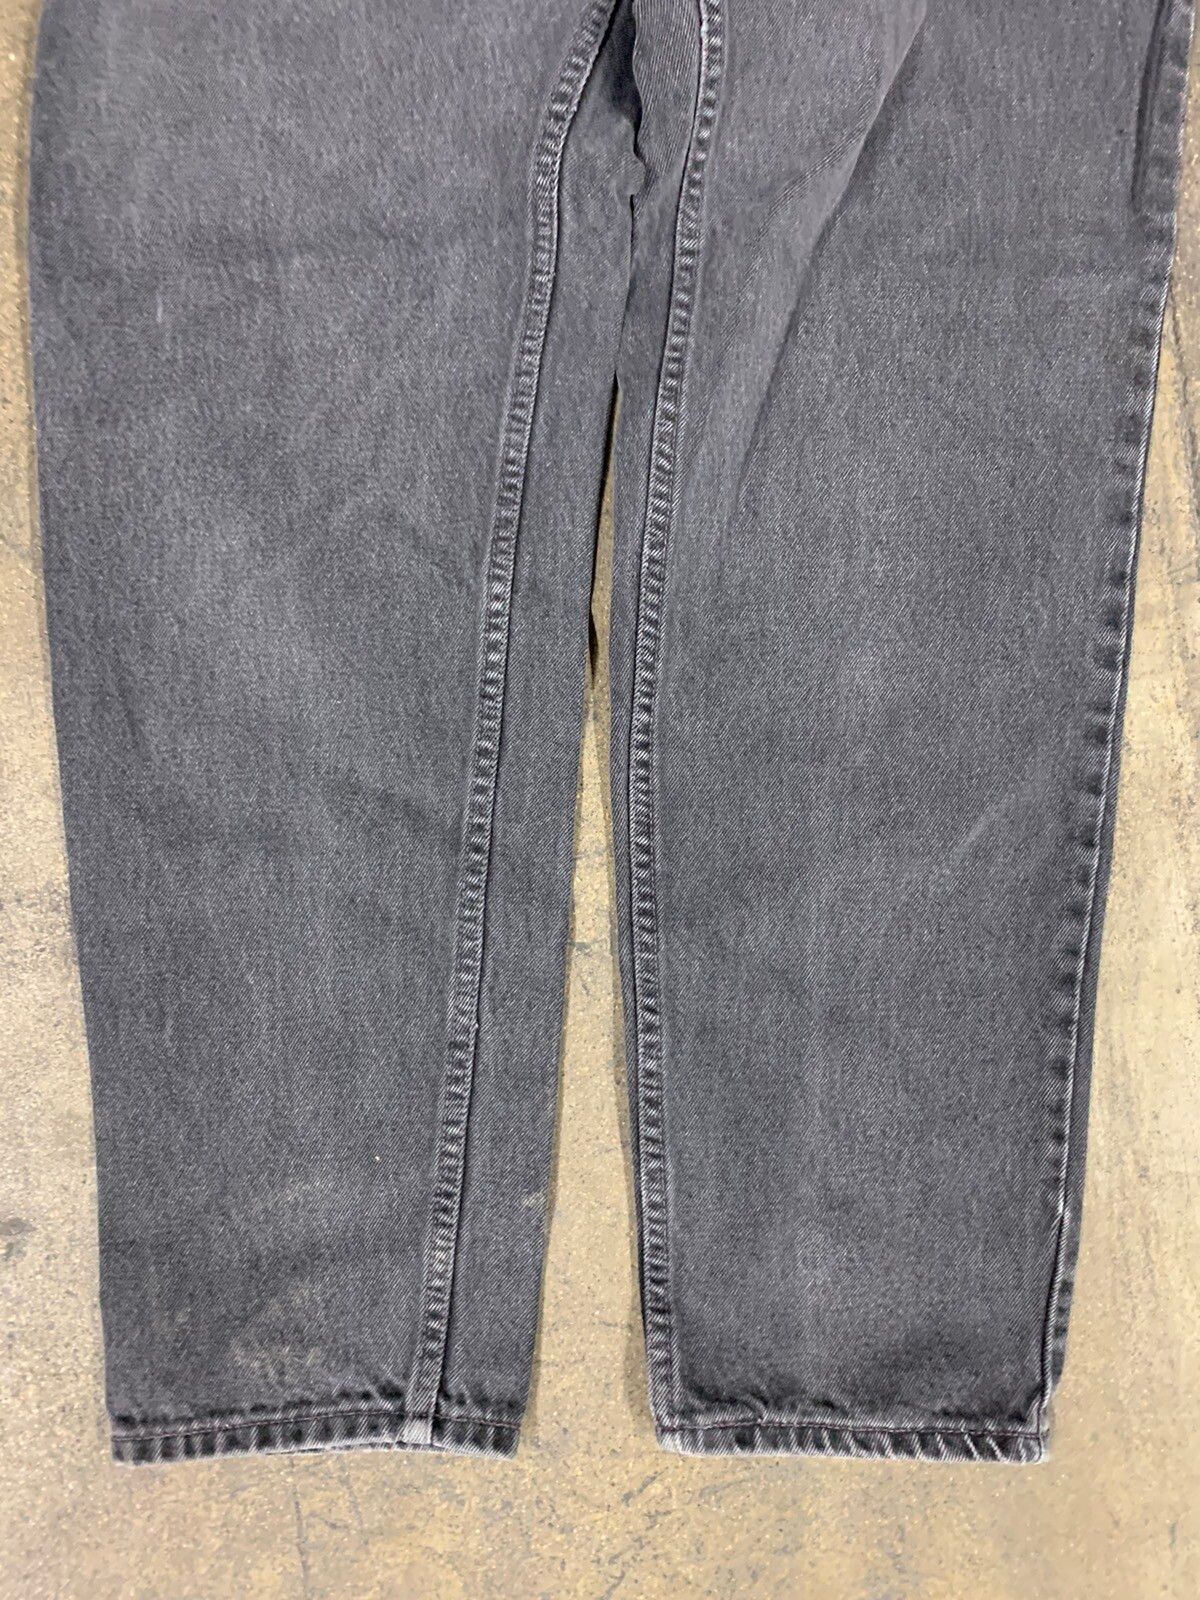 Vintage Vintage 1990s Levi’s 550 Black Jeans Size US 28 / EU 44 - 2 Preview